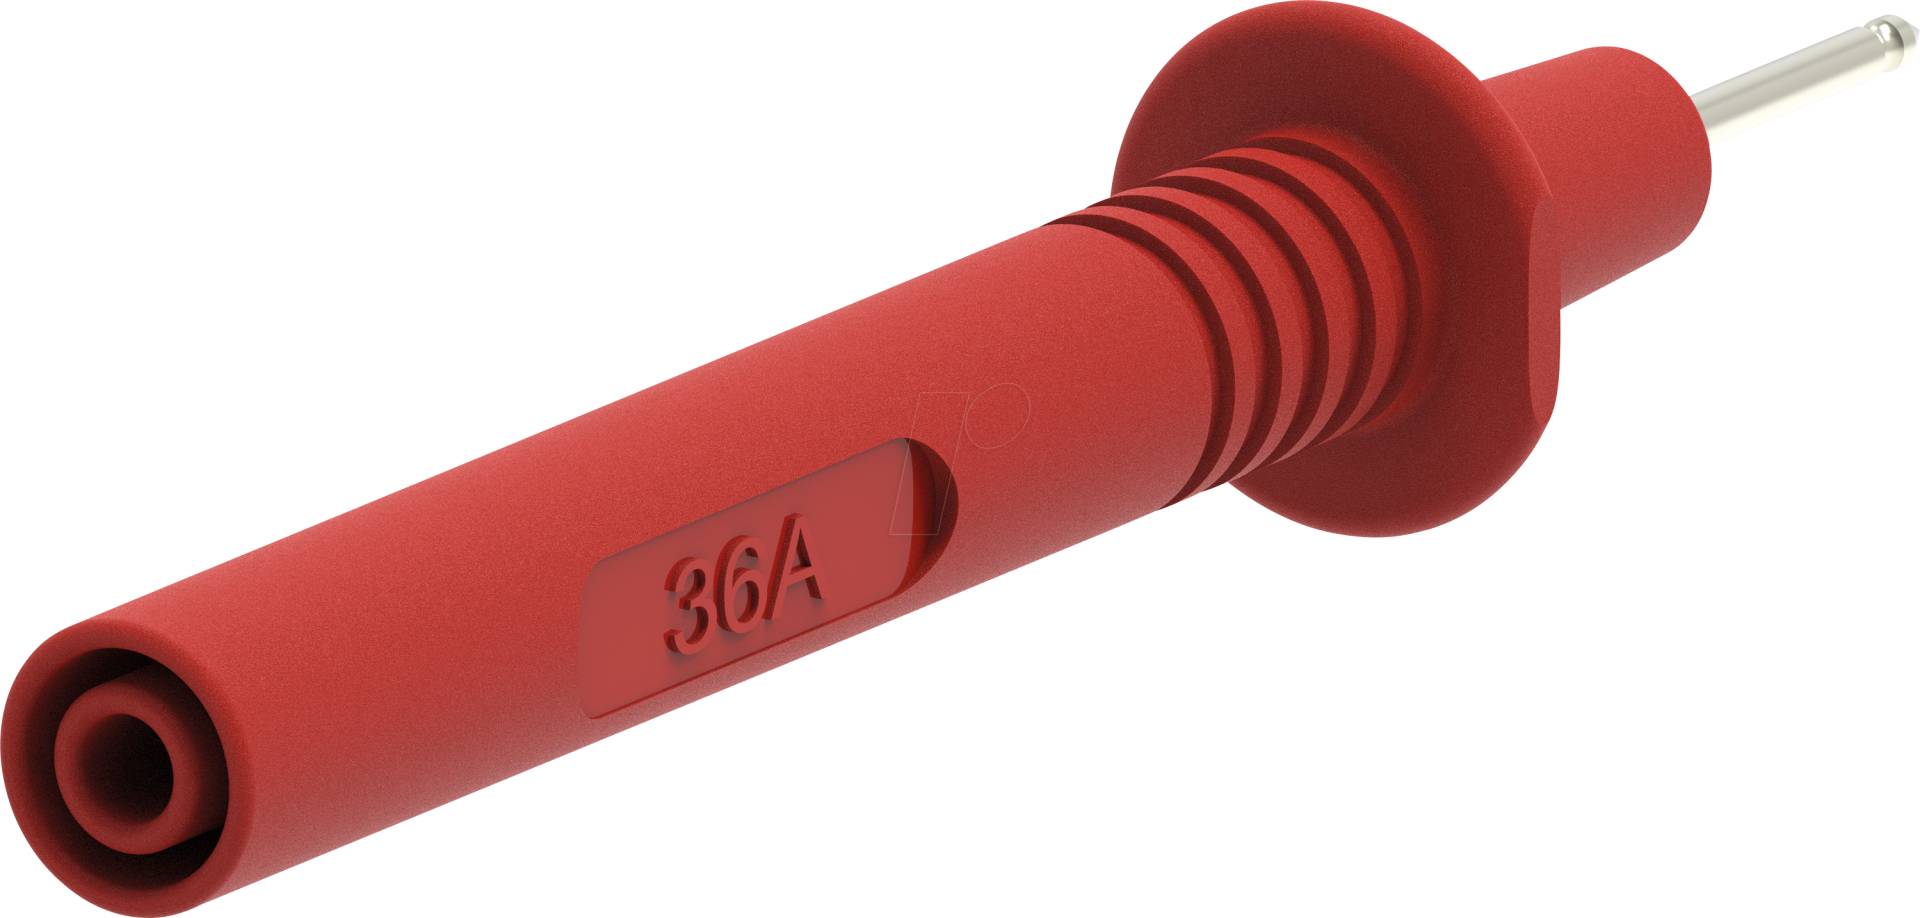 PJP 405-IEC-R - Prüfspitze 2 mm, mit 4 mm Anschluss, rot von ELECTRO PJP